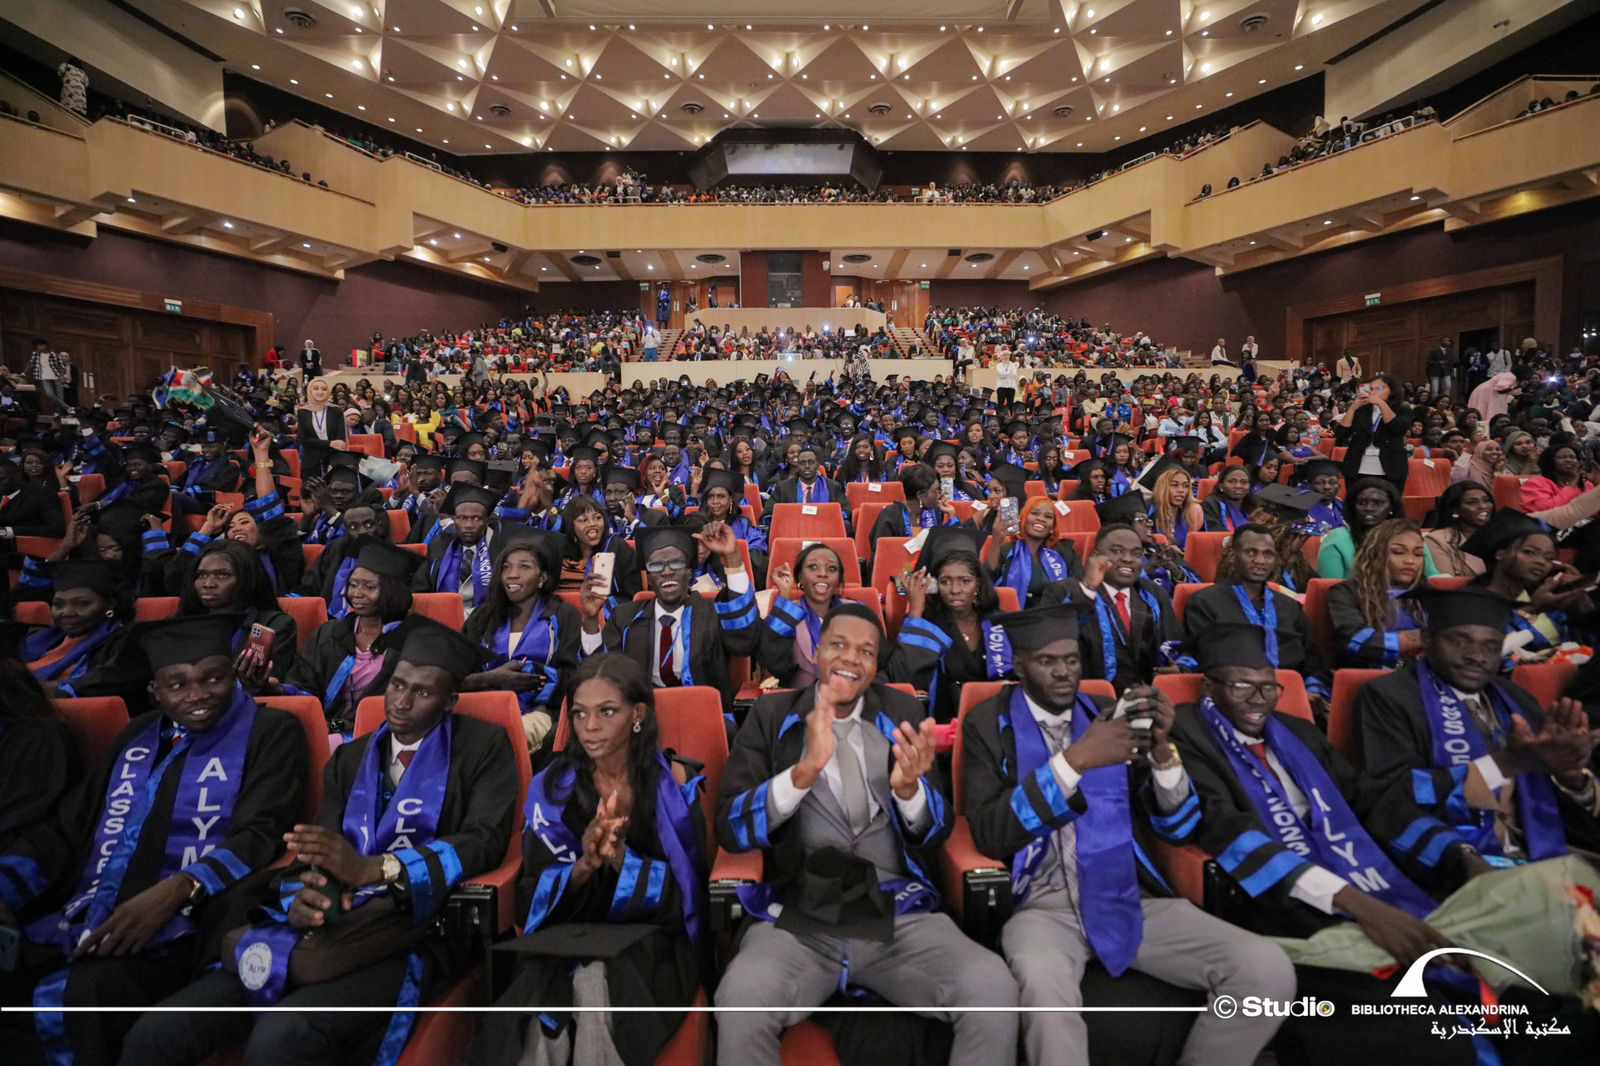  الطلاب الأفارقة خلال حفل تخرجهم بمكتبة الإسكندرية